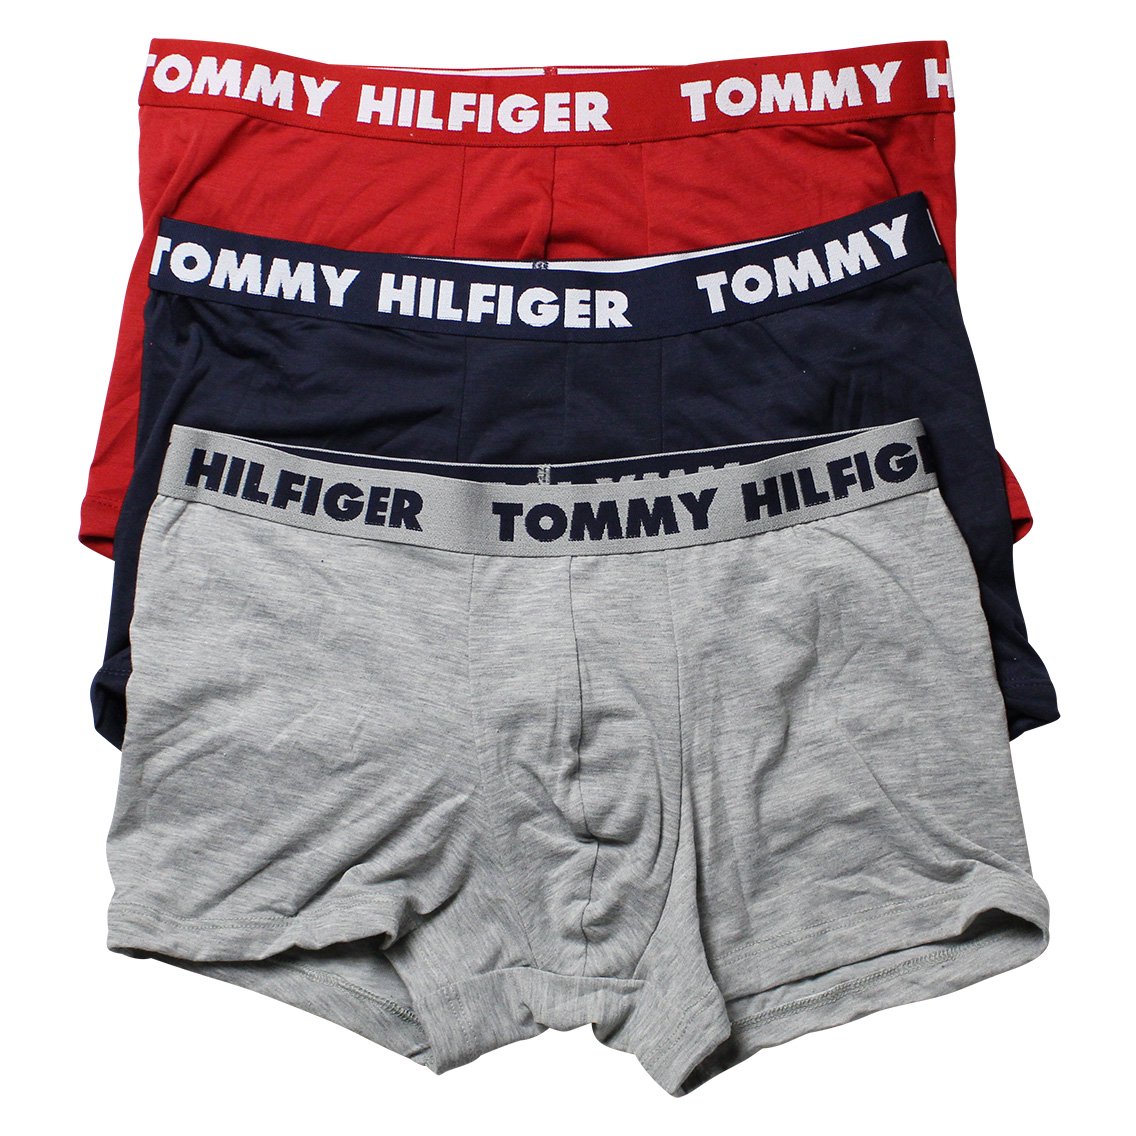 TOMMY HILFIGER(トミーヒルフィガー)[09T3798-608]:ボクサーパンツ